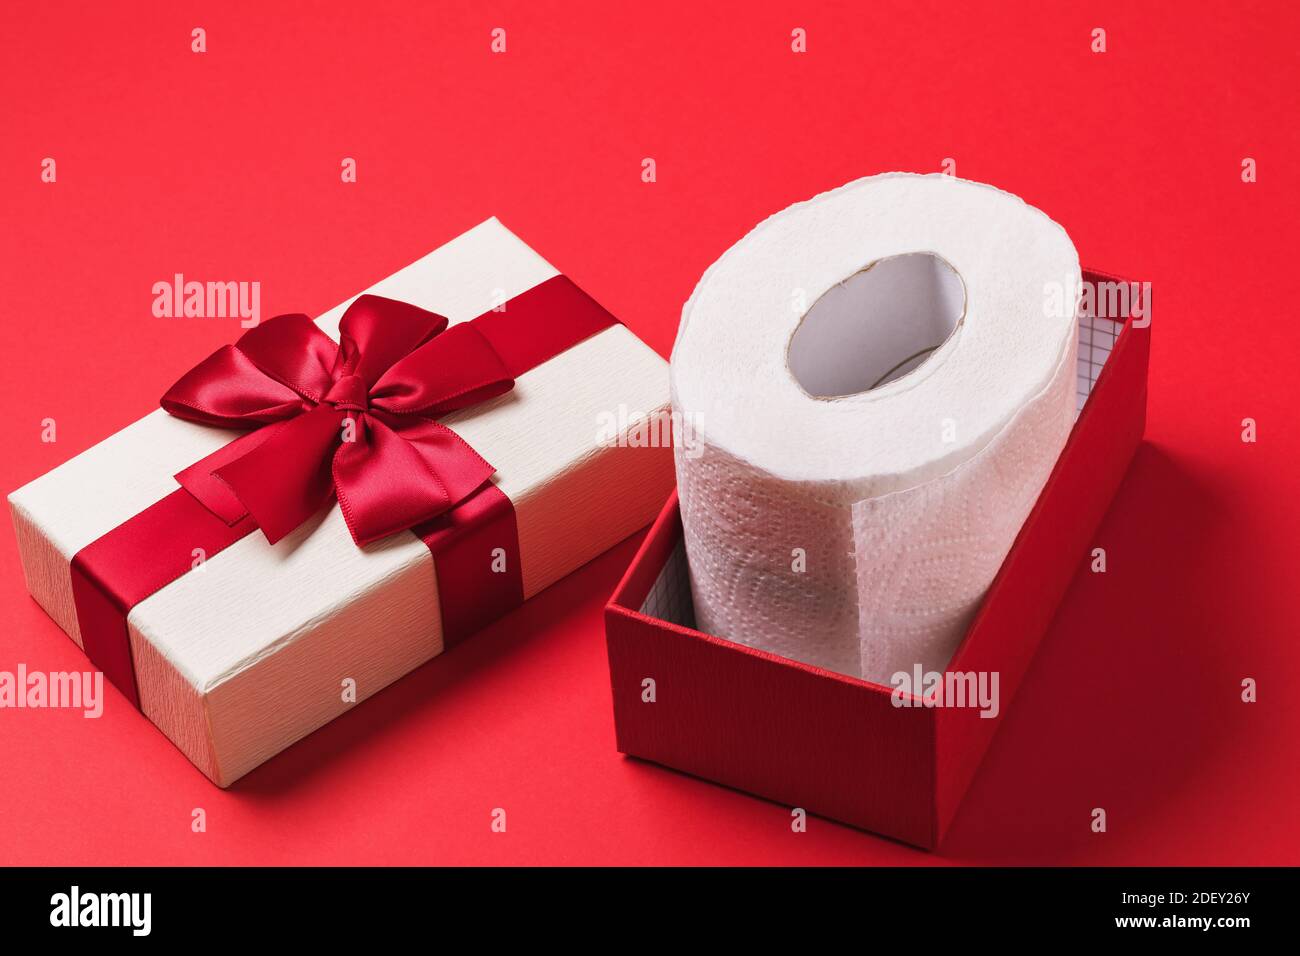 Rouleau de papier toilette dans une boîte cadeau sur fond rouge. Banque D'Images